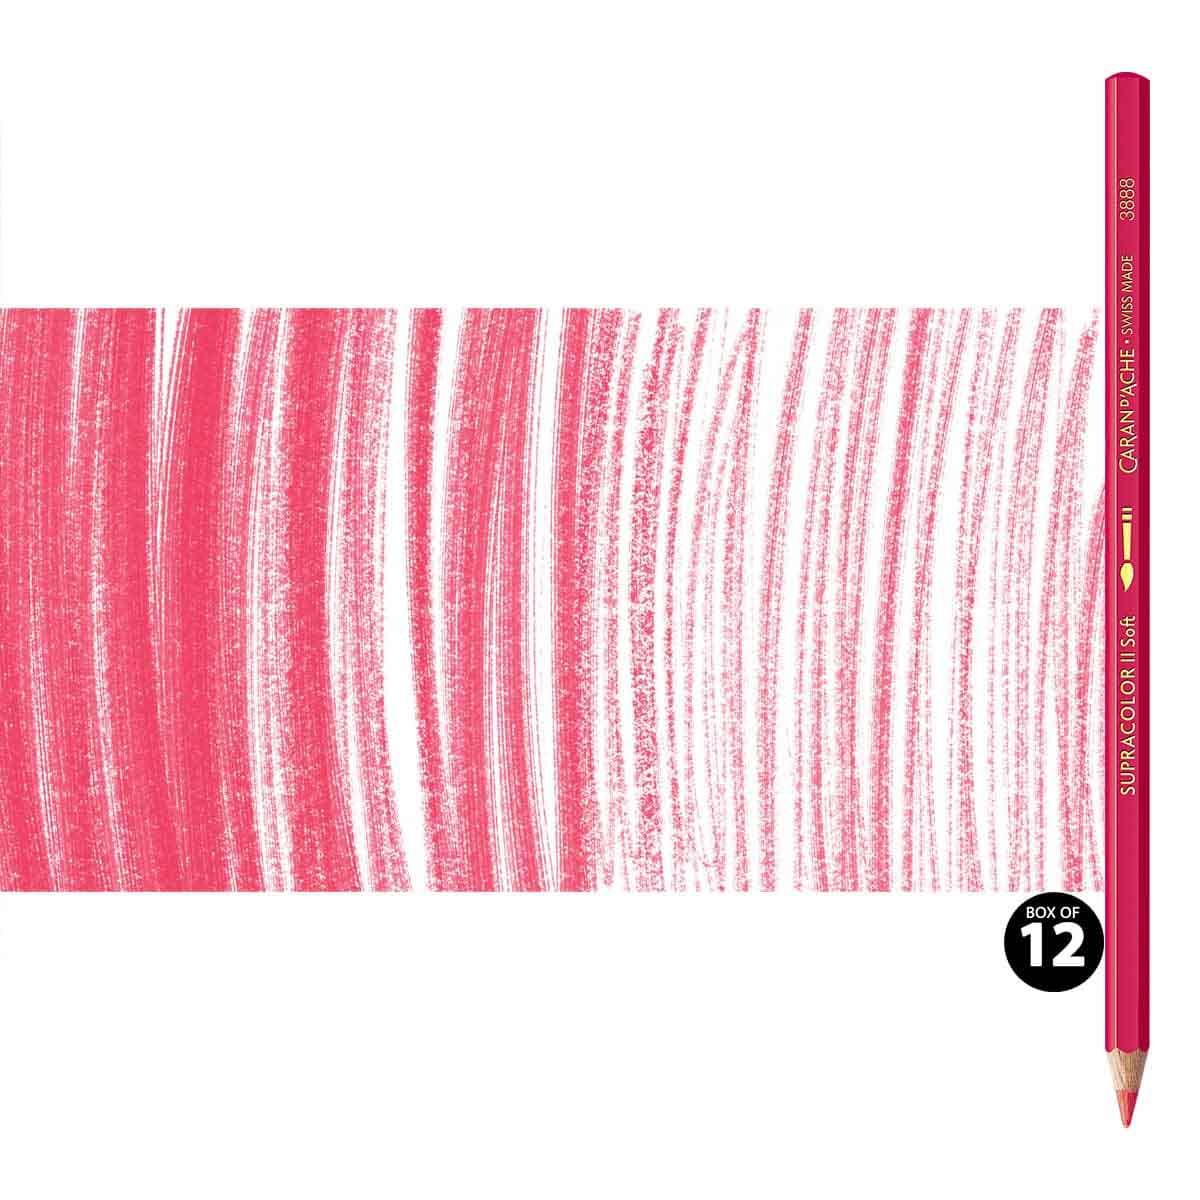 Supracolor II Watercolor Pencils Box of 12 No. 280 - Ruby Red